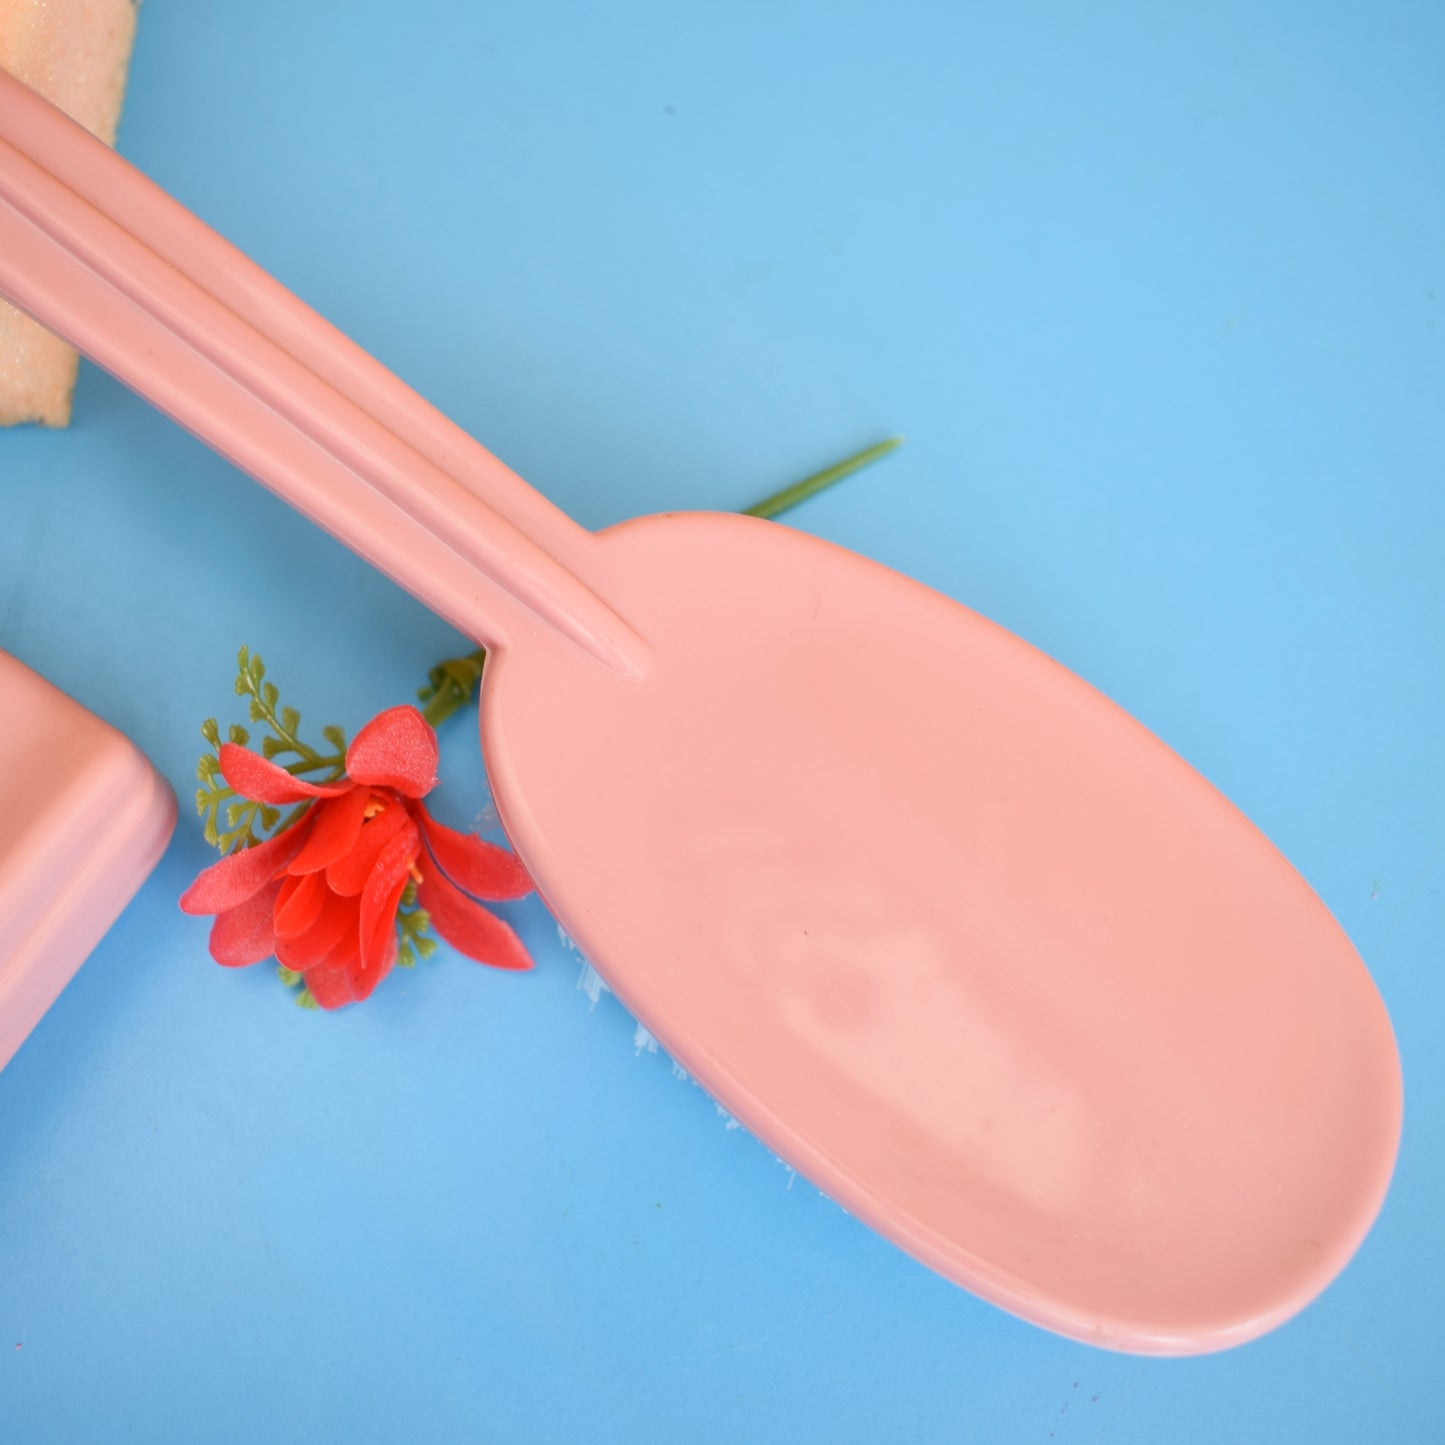 Vintage 1960s Bathroom Gift Set - Pink